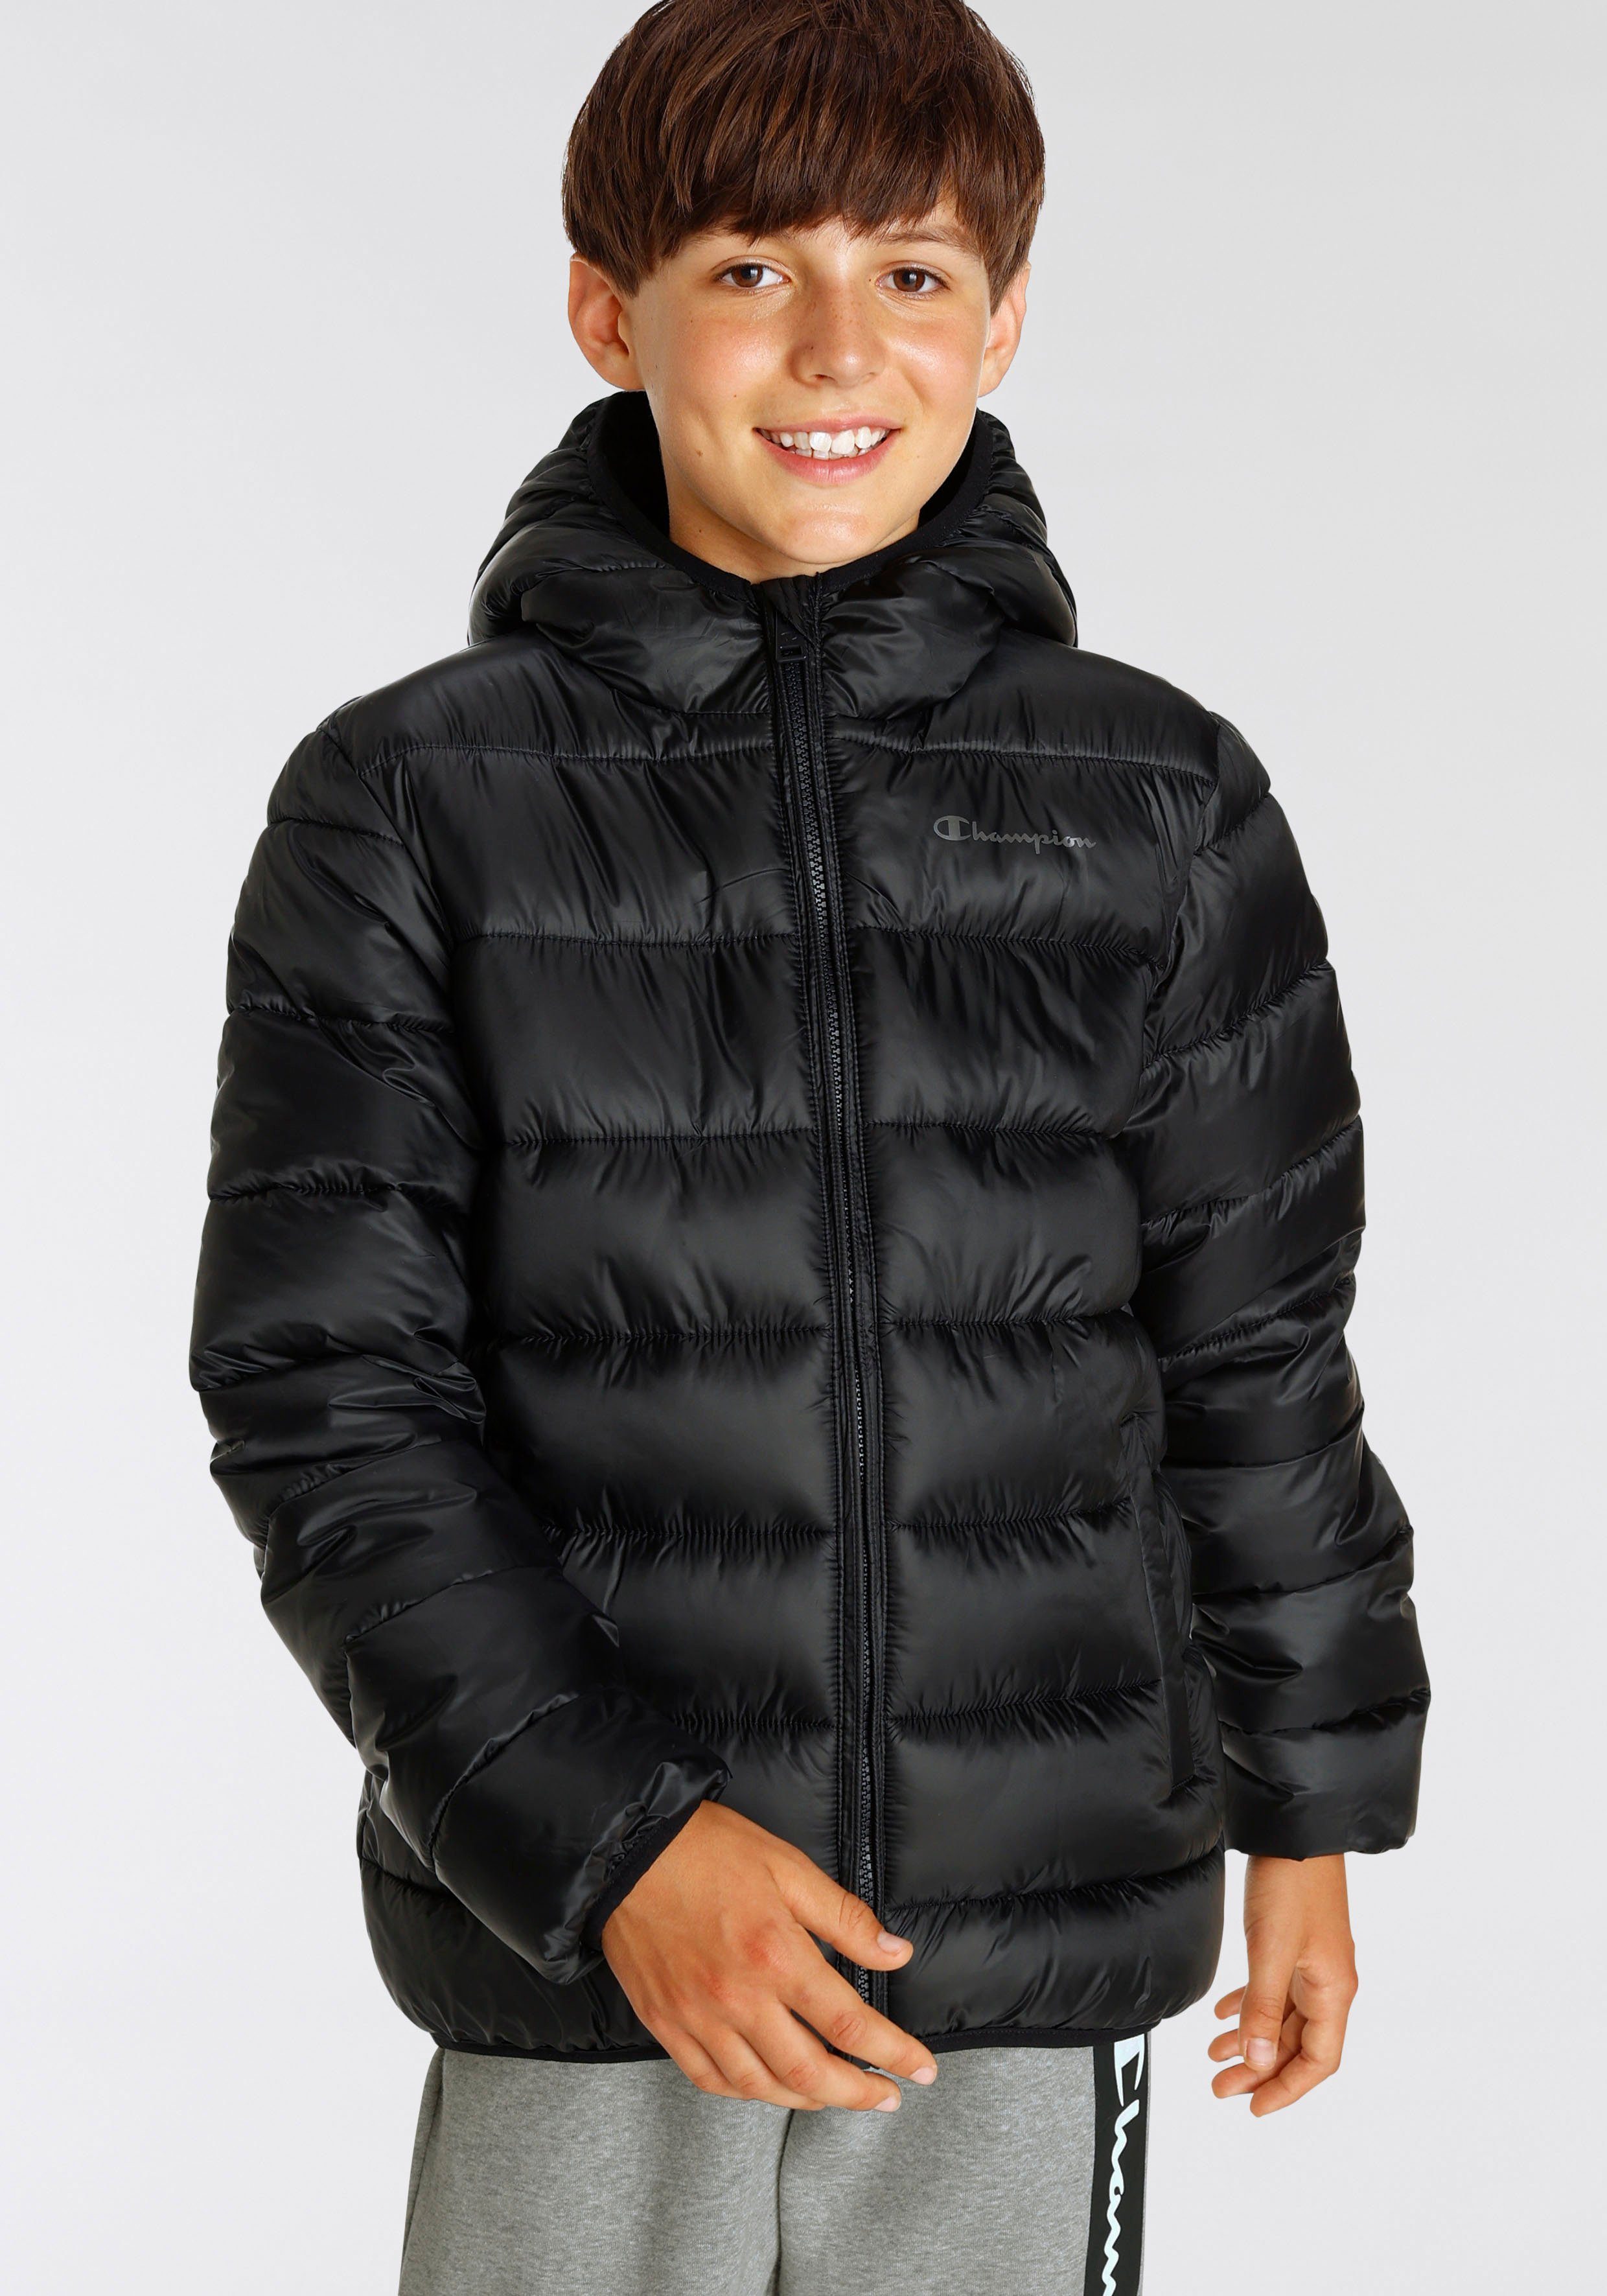 Champion Steppjacke Outdoor Hooded schwarz - Kinder Jacket für